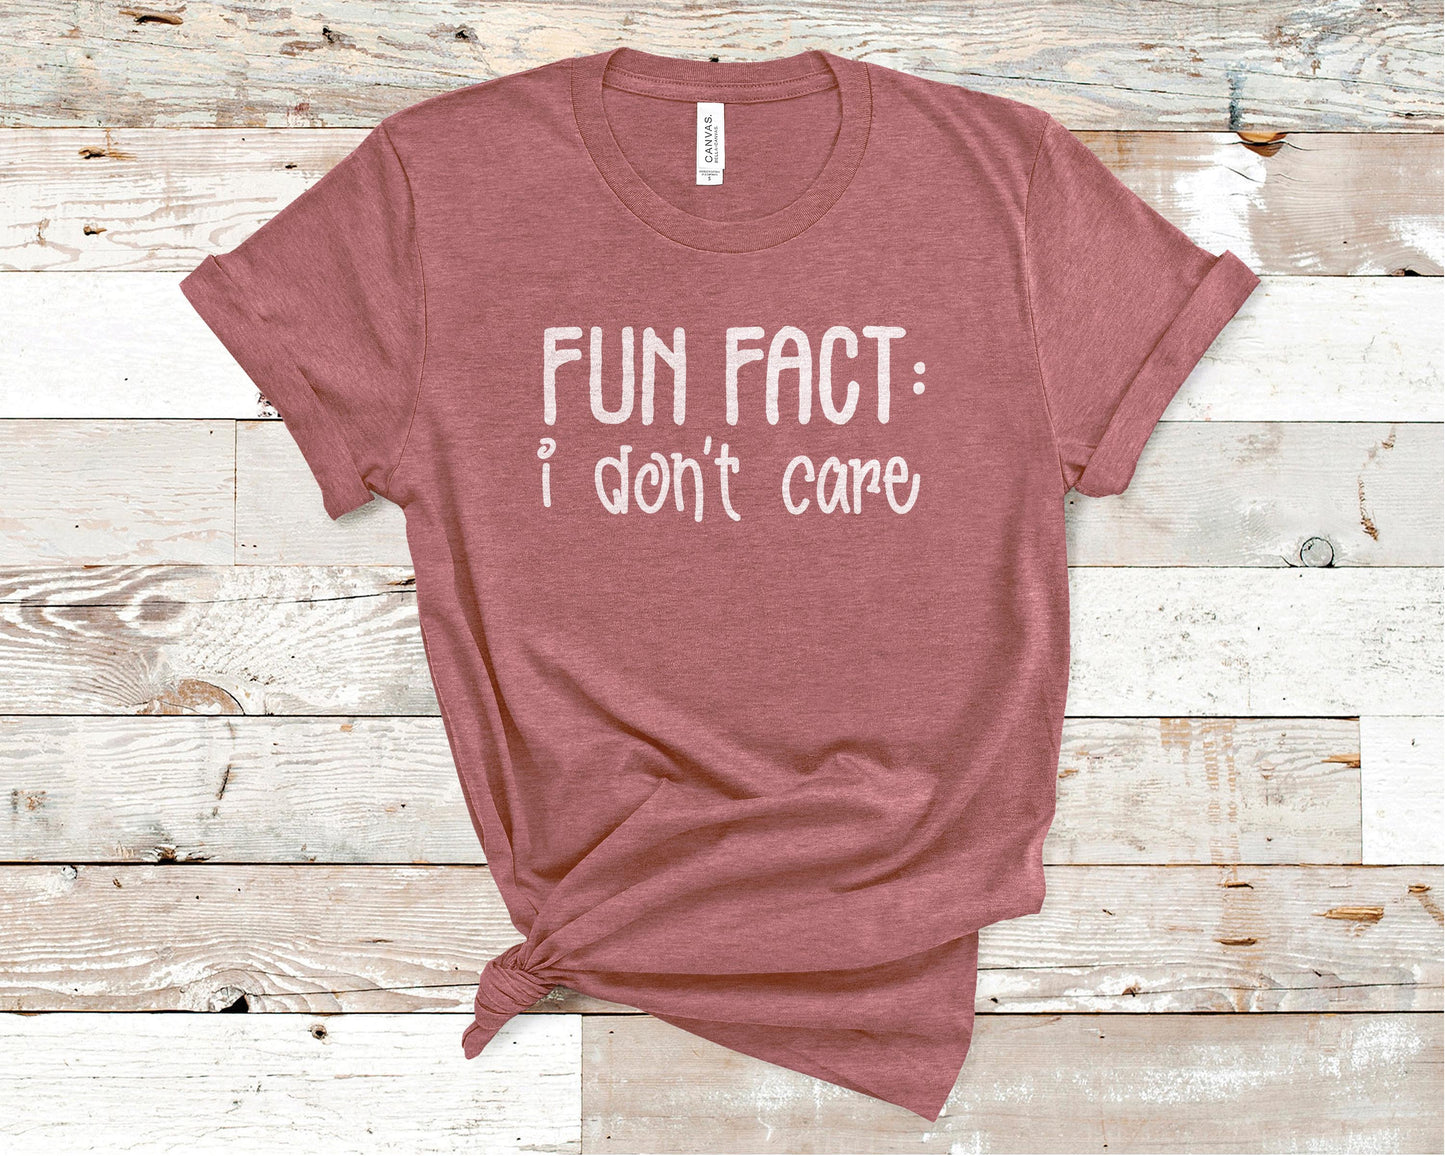 Fun Fact: I Don't Care - Funny/ Sarcastic